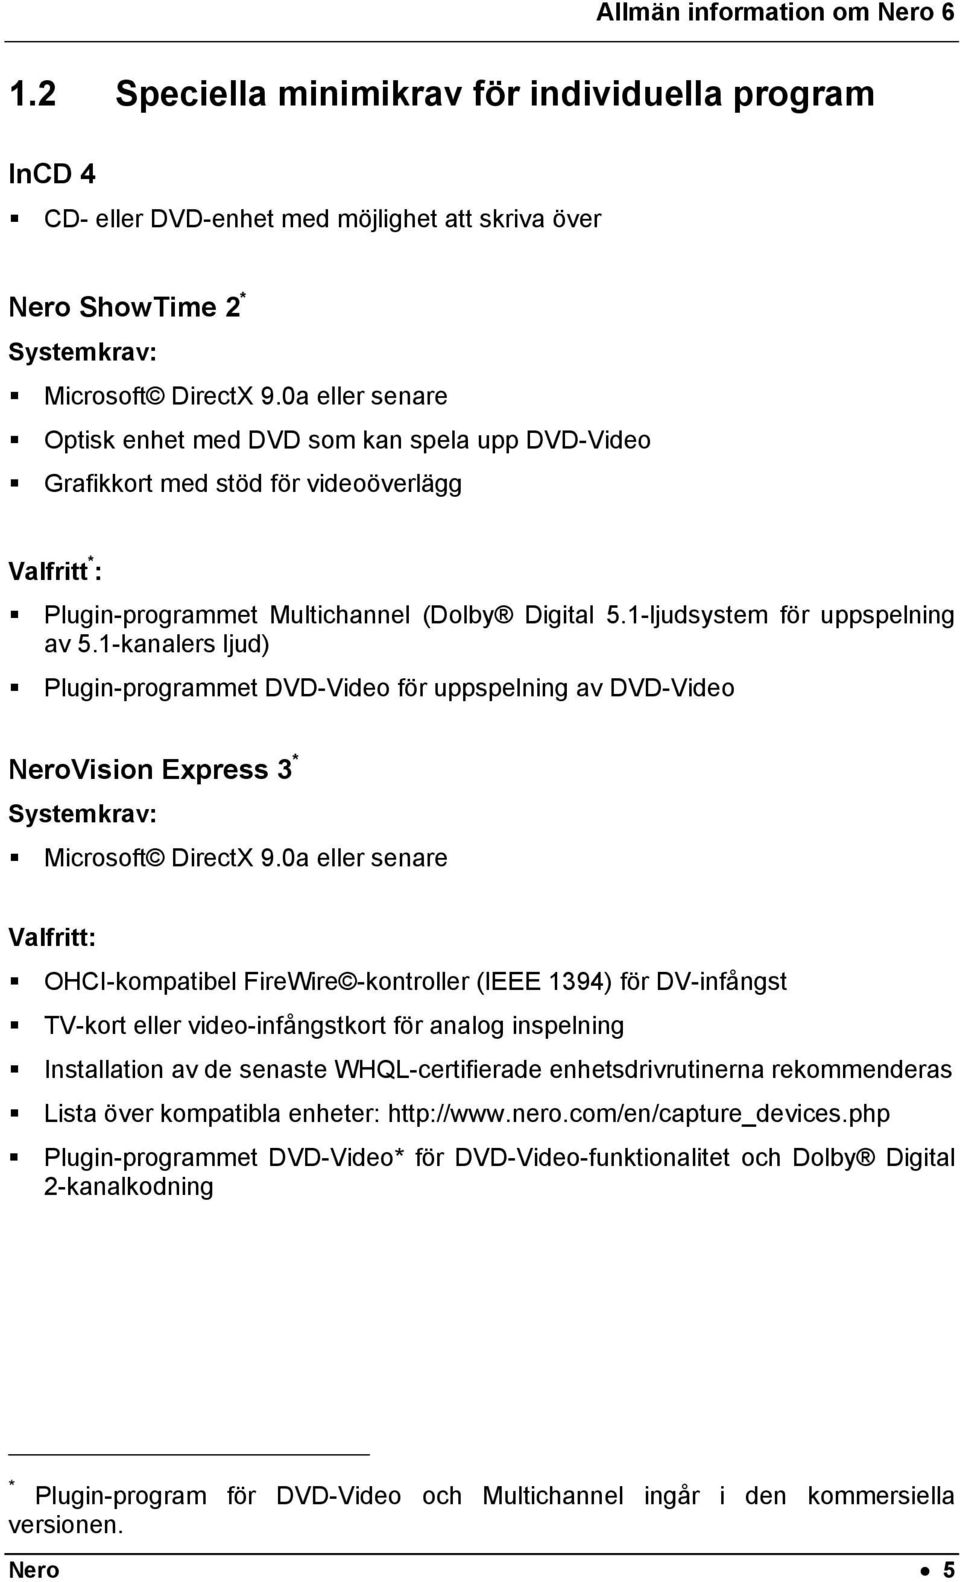 1-kanalers ljud) Plugin-programmet DVD-Video för uppspelning av DVD-Video NeroVision Express 3 * Systemkrav: Microsoft DirectX 9.